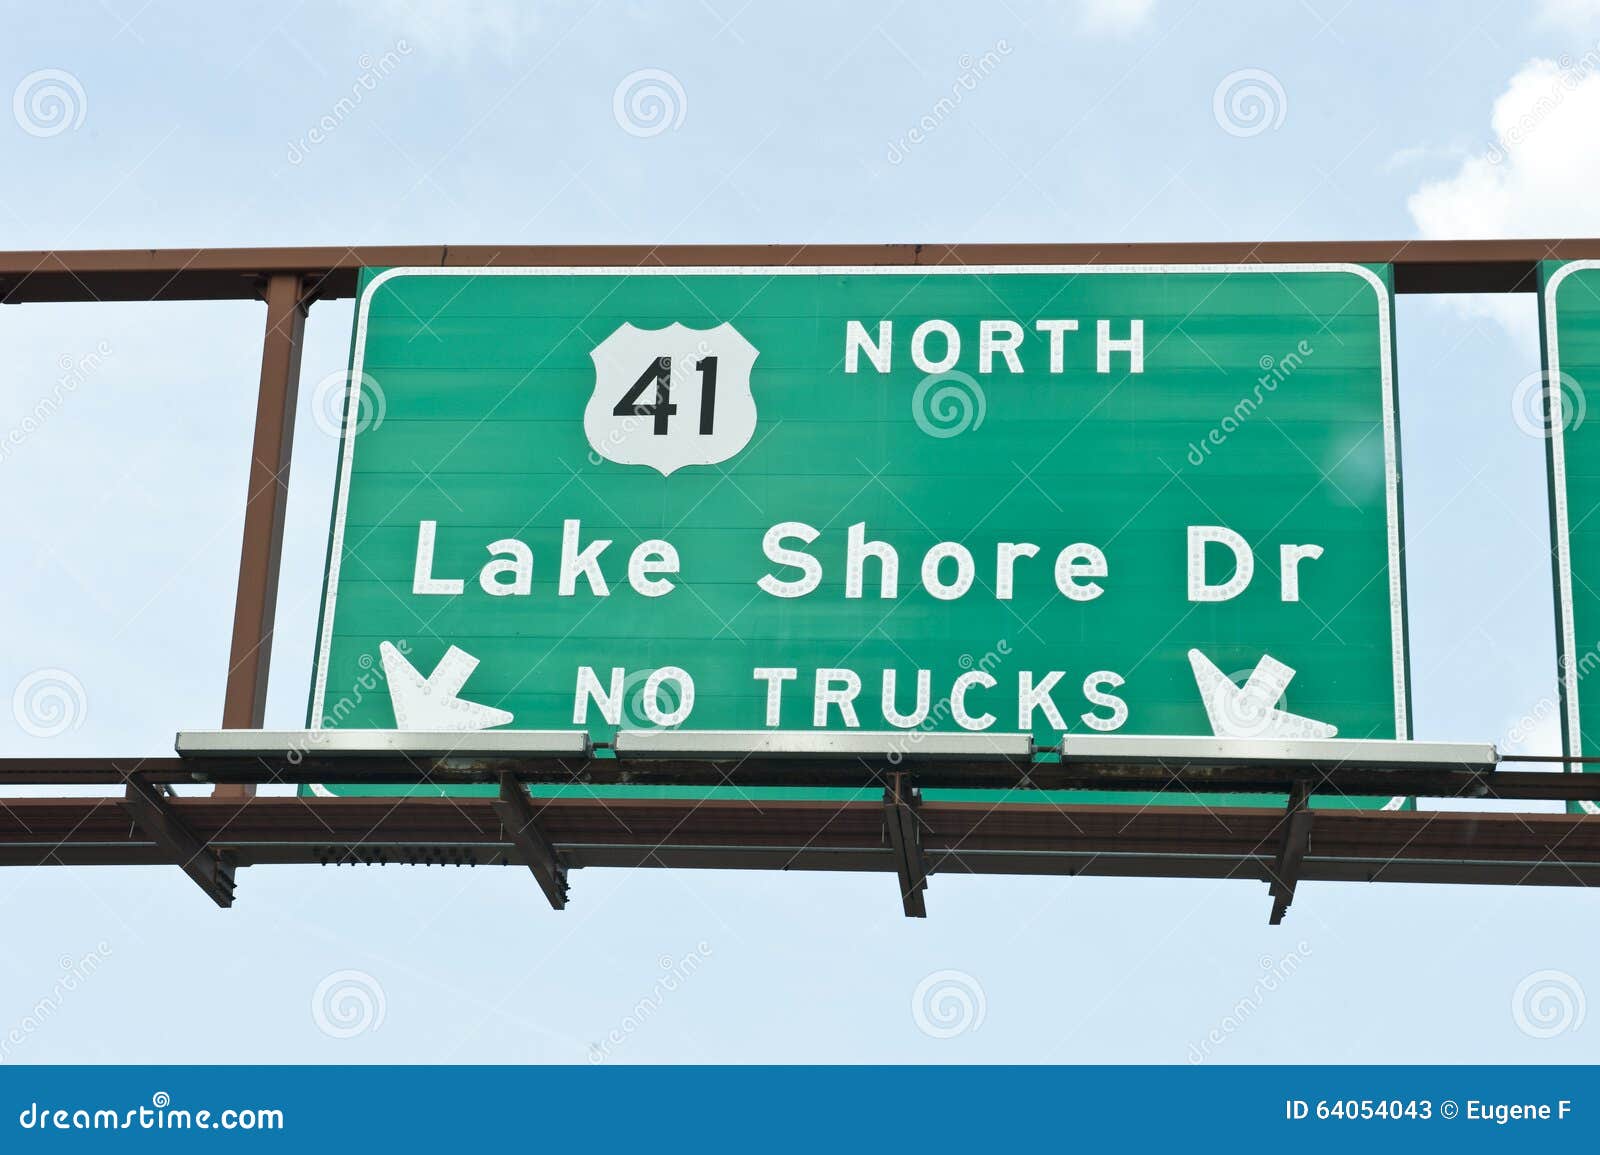 lake shore dr